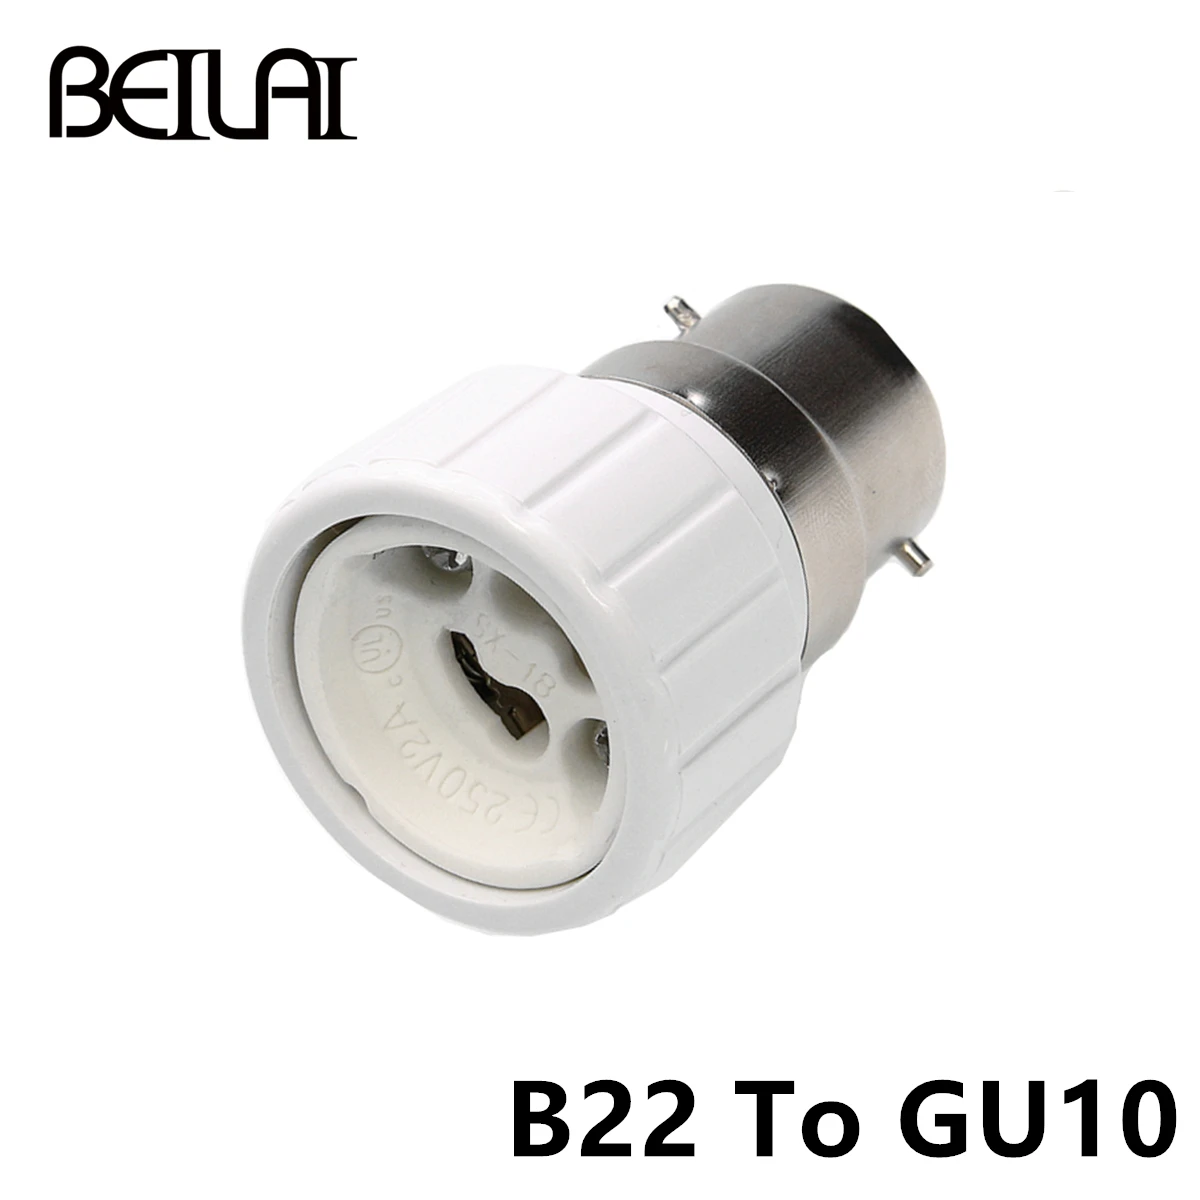 2 в 1 E27 Y Форма лампа MR16 GU10 E14 B22 G9 Материал держатель конвертер розеточный светильник разделитель ламп адаптер патрон для лампочки держатель